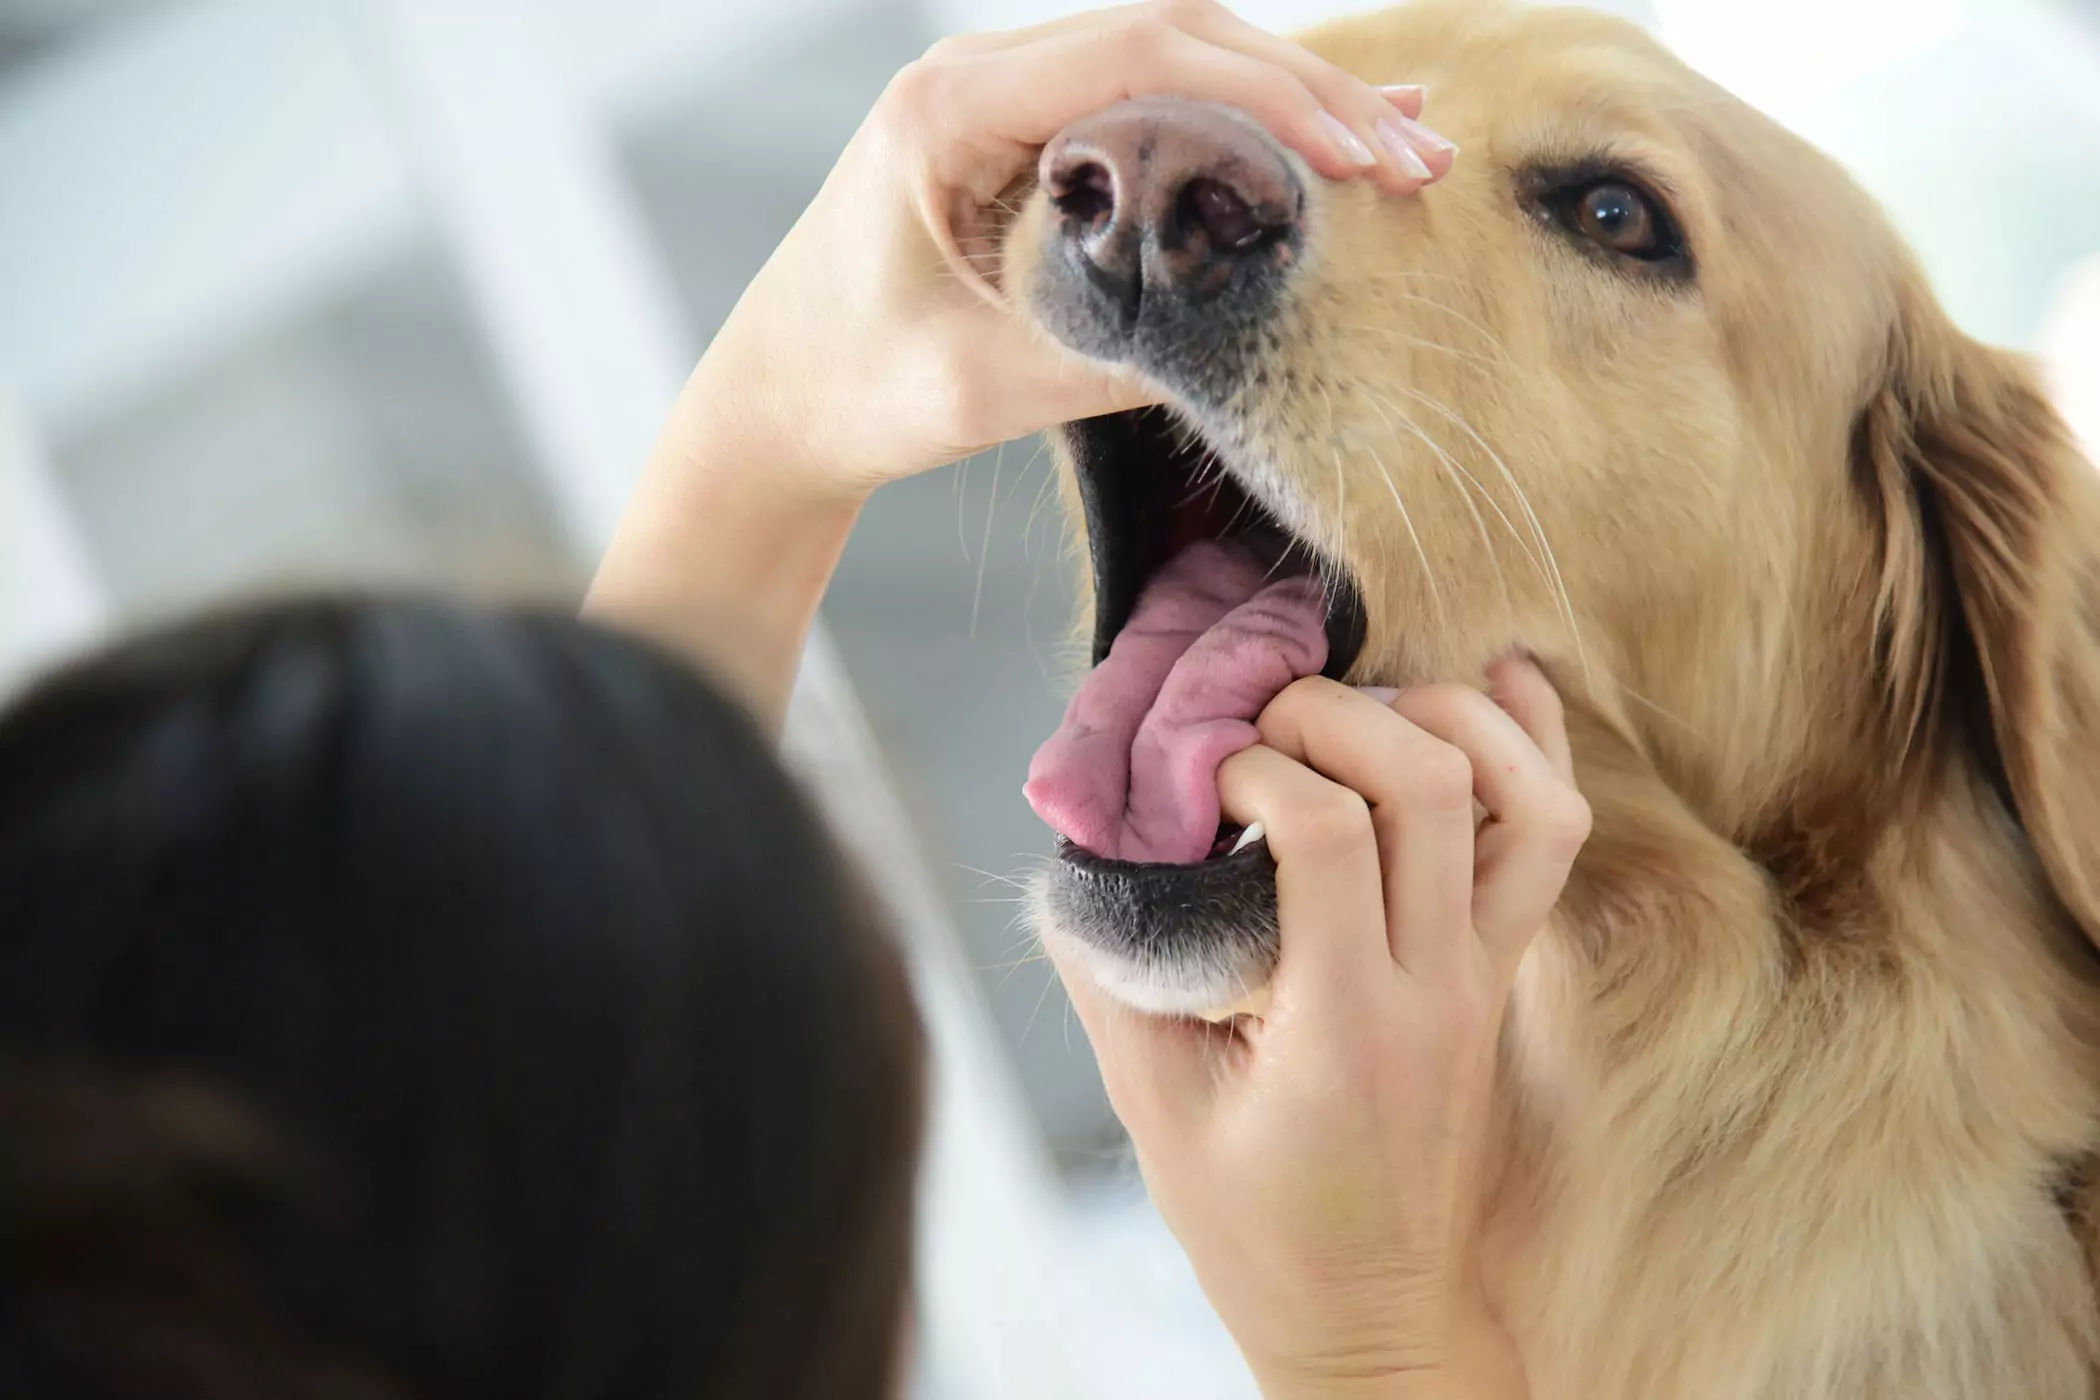 狗的嘴比人的干凈嗎？狗狗的嘴巴要比人類干凈？這是偷換概念，兩者沒有可比性